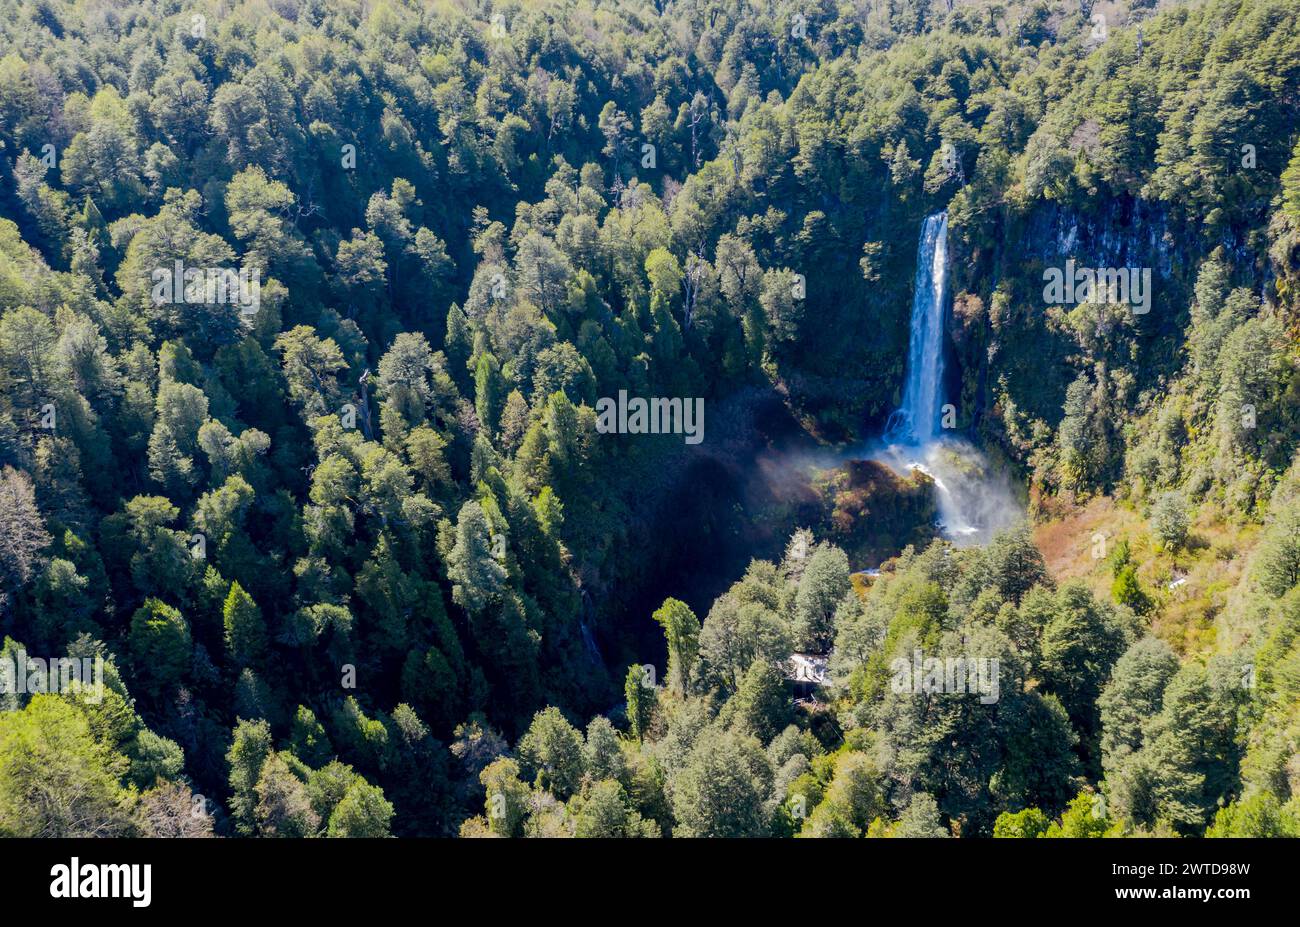 Vue aérienne de la cascade Salto El Leon, vallée de cascades à l'est de Pucon, Chili Banque D'Images